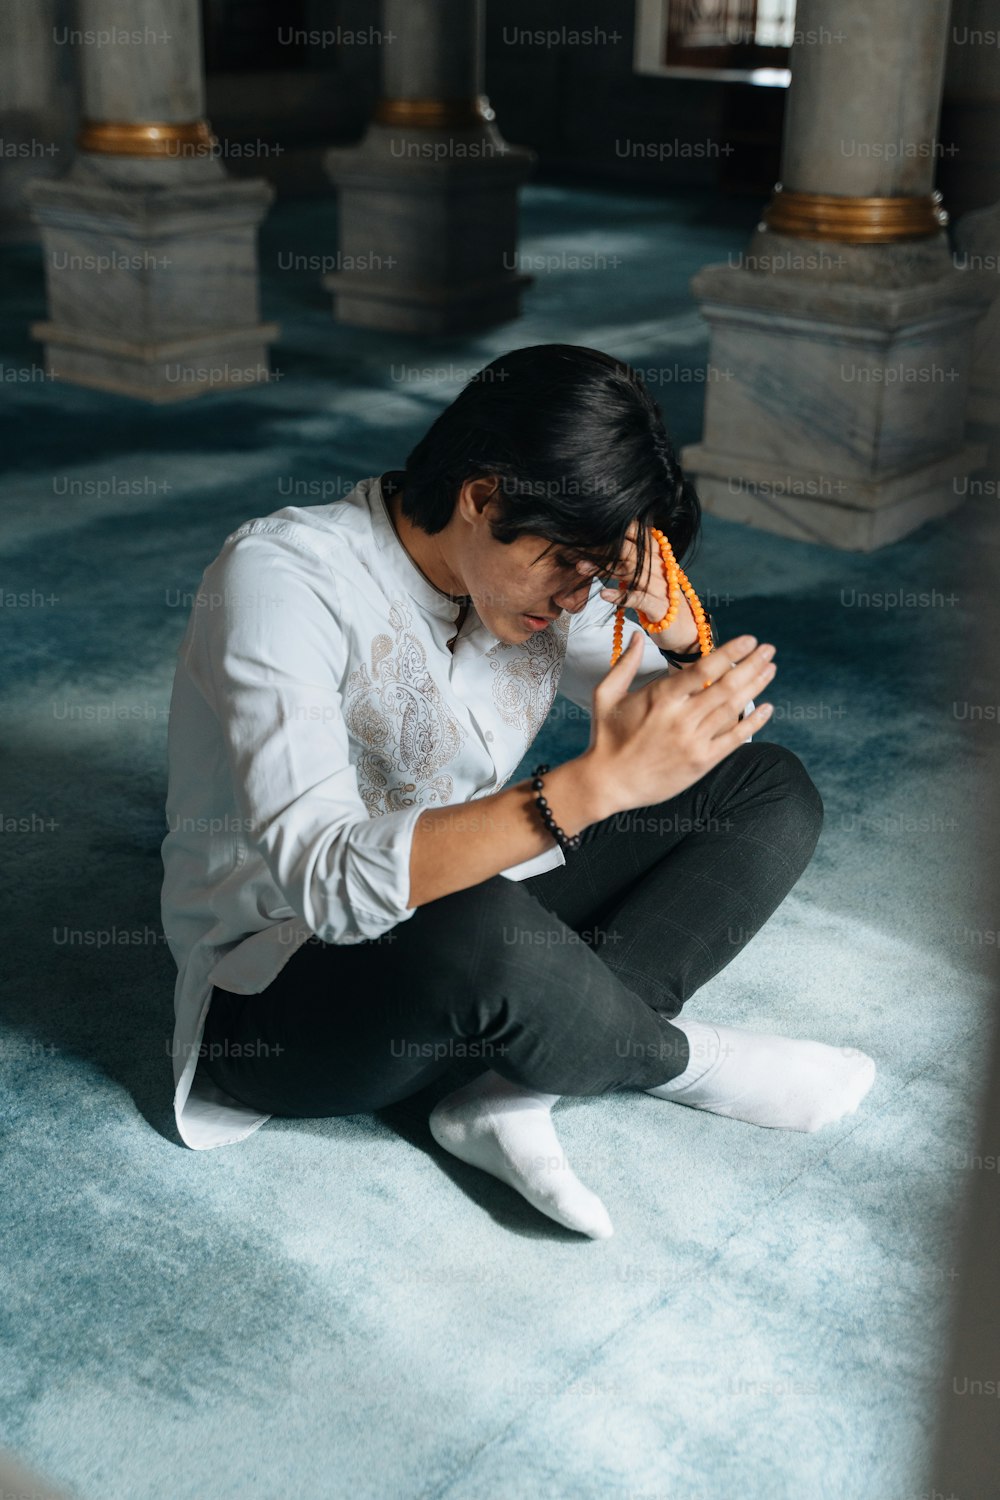 Ein Mann sitzt auf dem Boden und hält ein Handy in der Hand